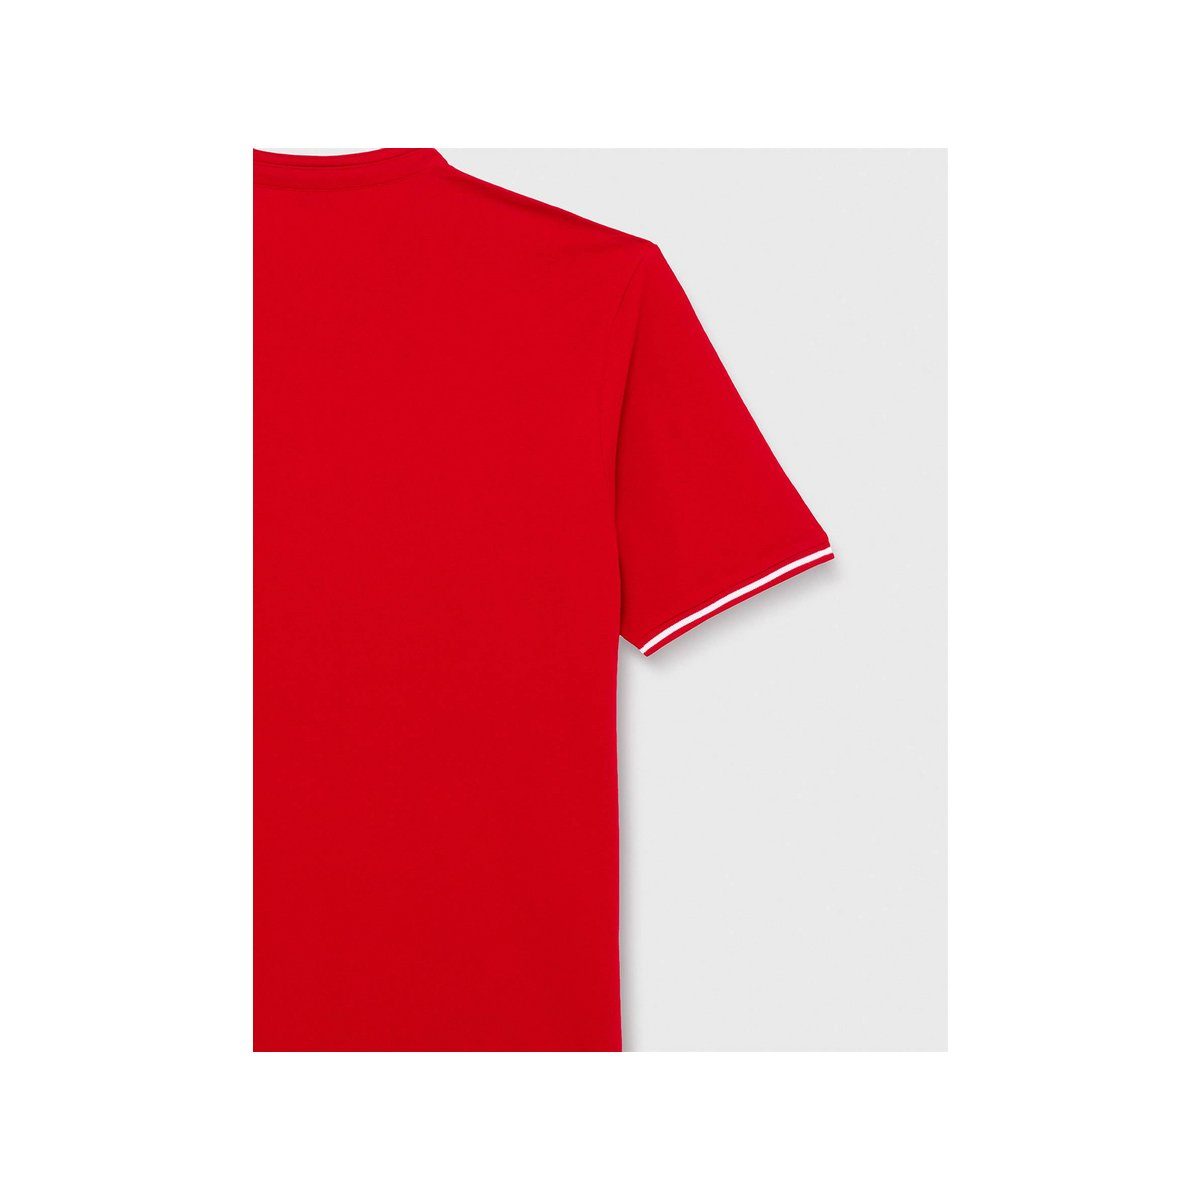 (1-tlg) T-Shirt Daniel regular fit rot Hechter